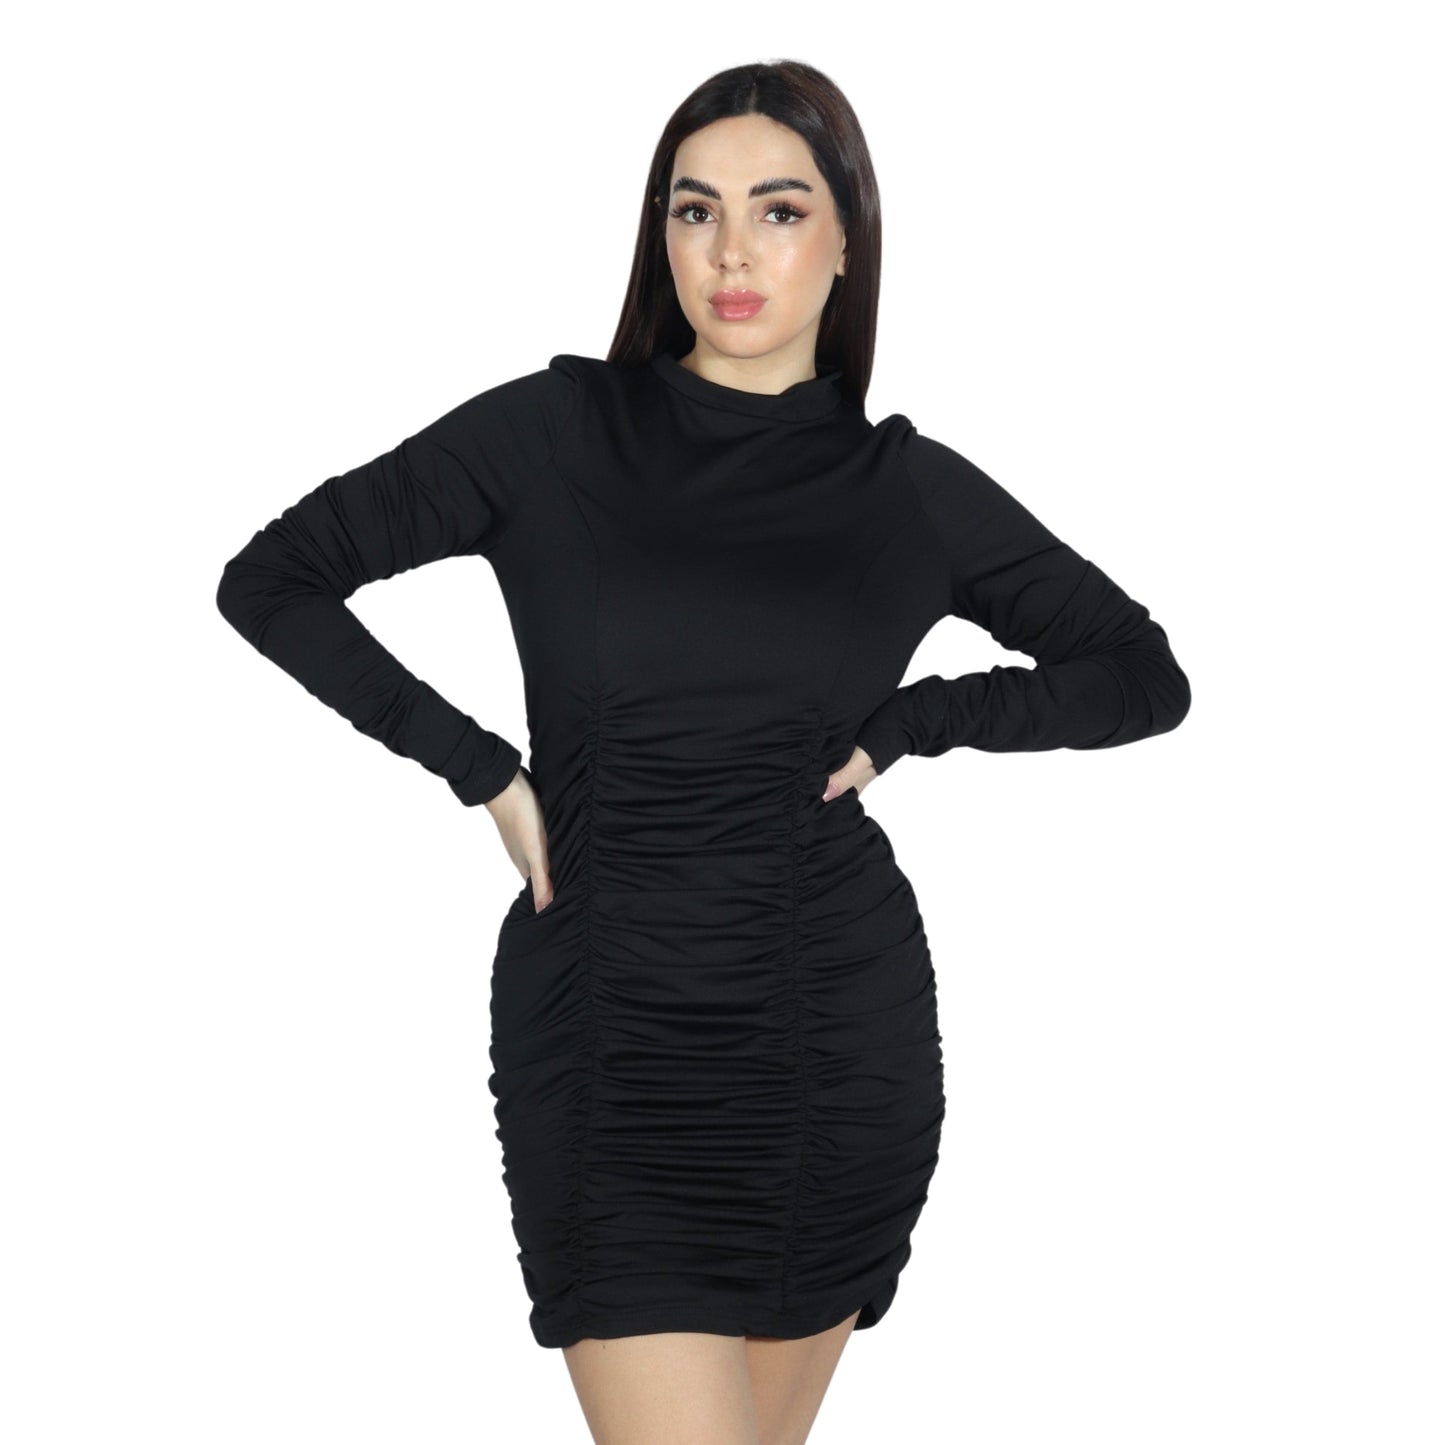 BRANDS & BEYOND Womens Dress XL / Black Long Sleeve Elastic Dress